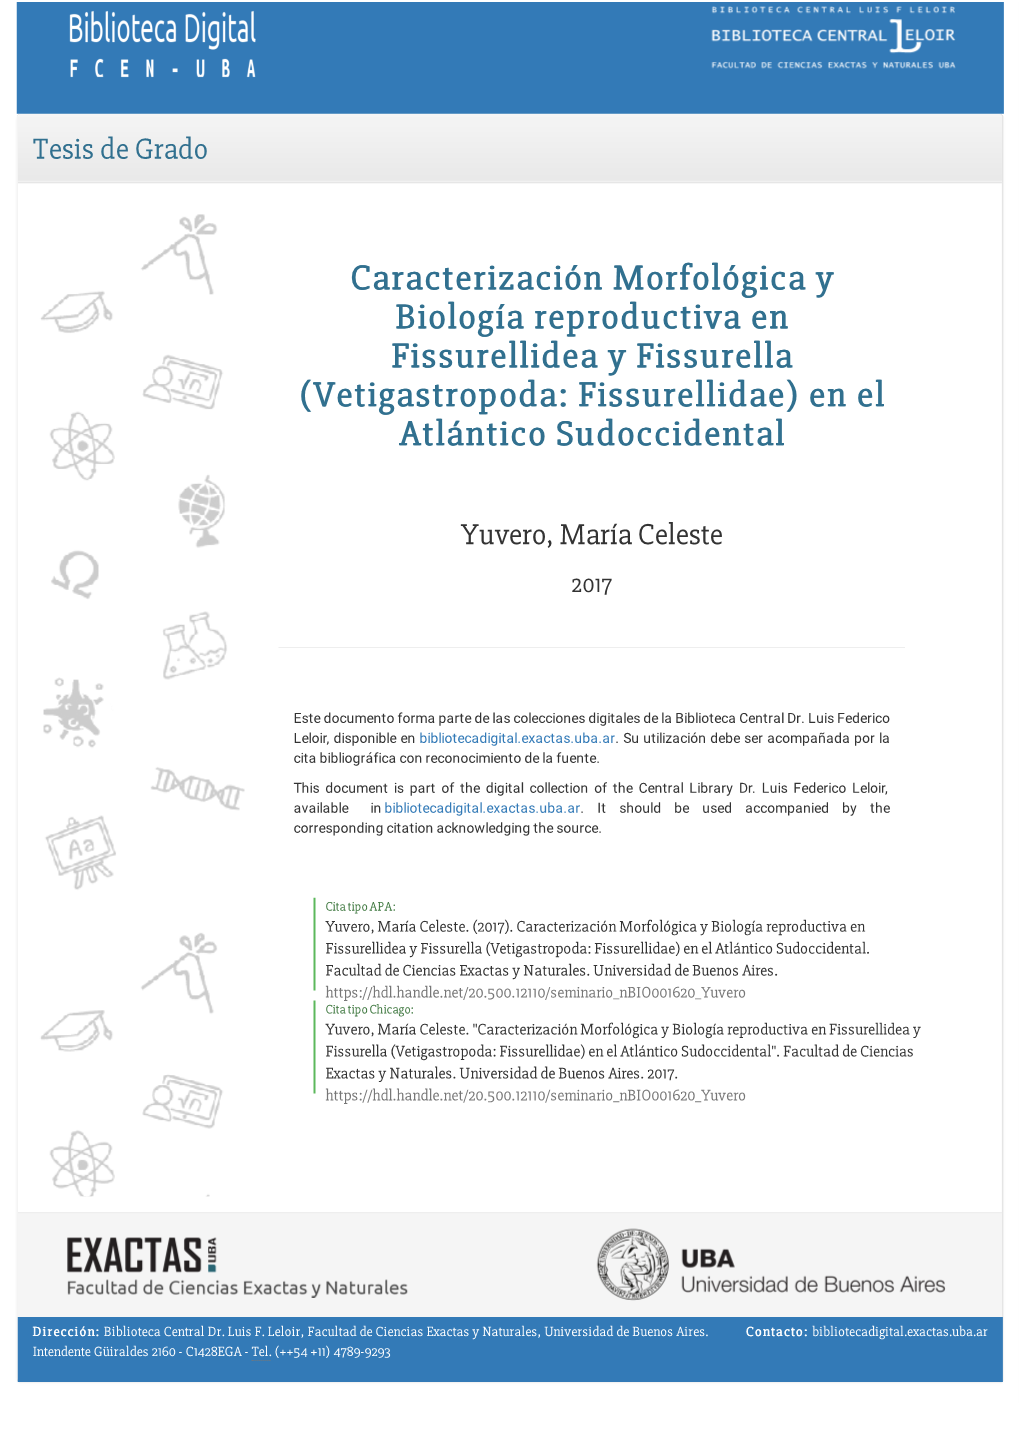 Caracterización Morfológica Y Biología Reproductiva En Fissurellidea Y Fissurella (Vetigastropoda: Fissurellidae) En El Atlántico Sudoccidental